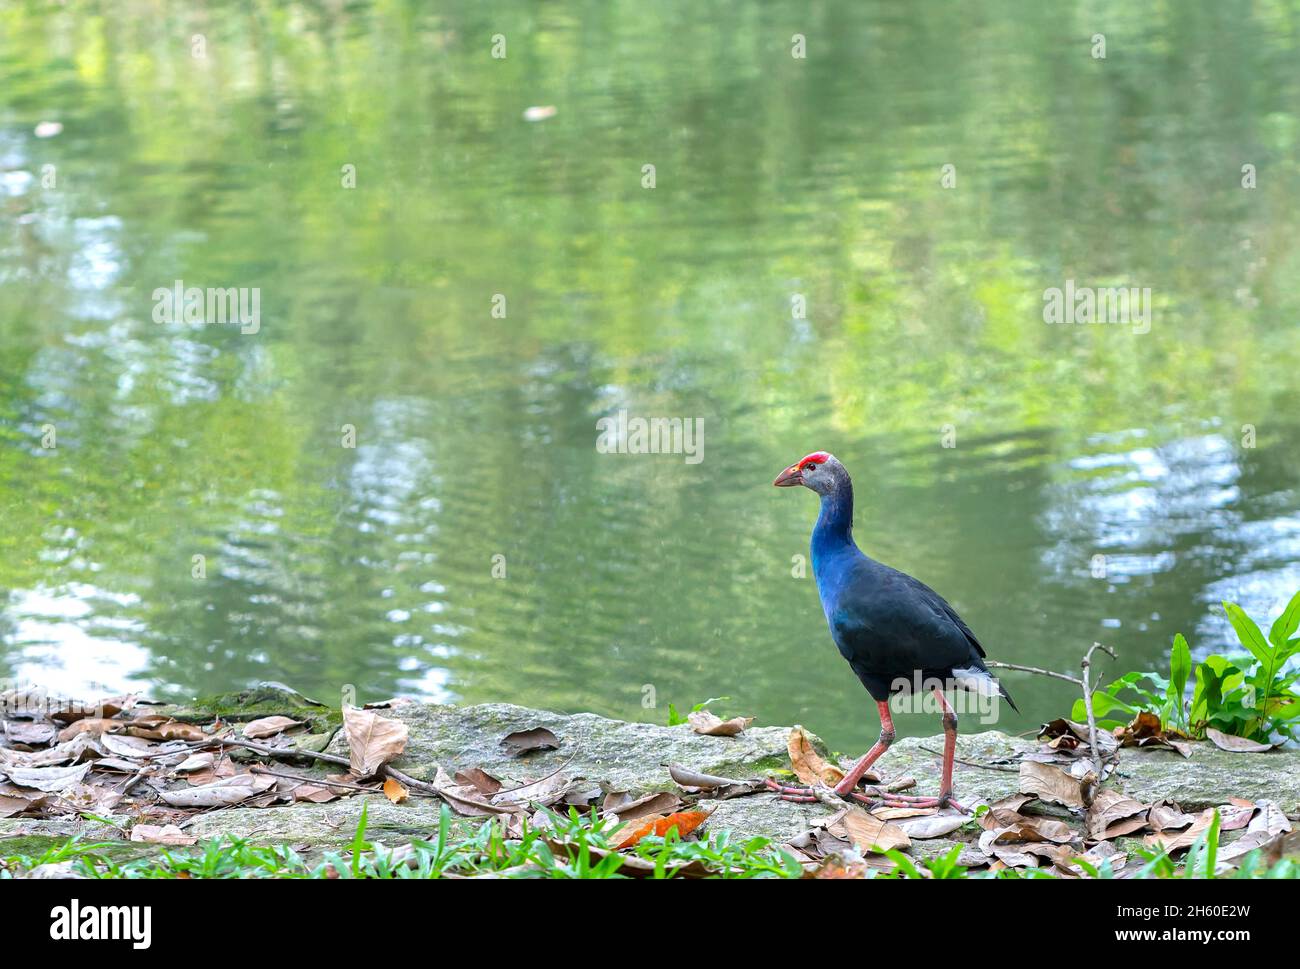 Uccello swanphen occidentale in piedi alla ricerca di cibo sulla riva del fiume in un parco pubblico. Questo è un grosso uccello della famiglia degli uccelli acquatici che vive nelle paludi Foto Stock